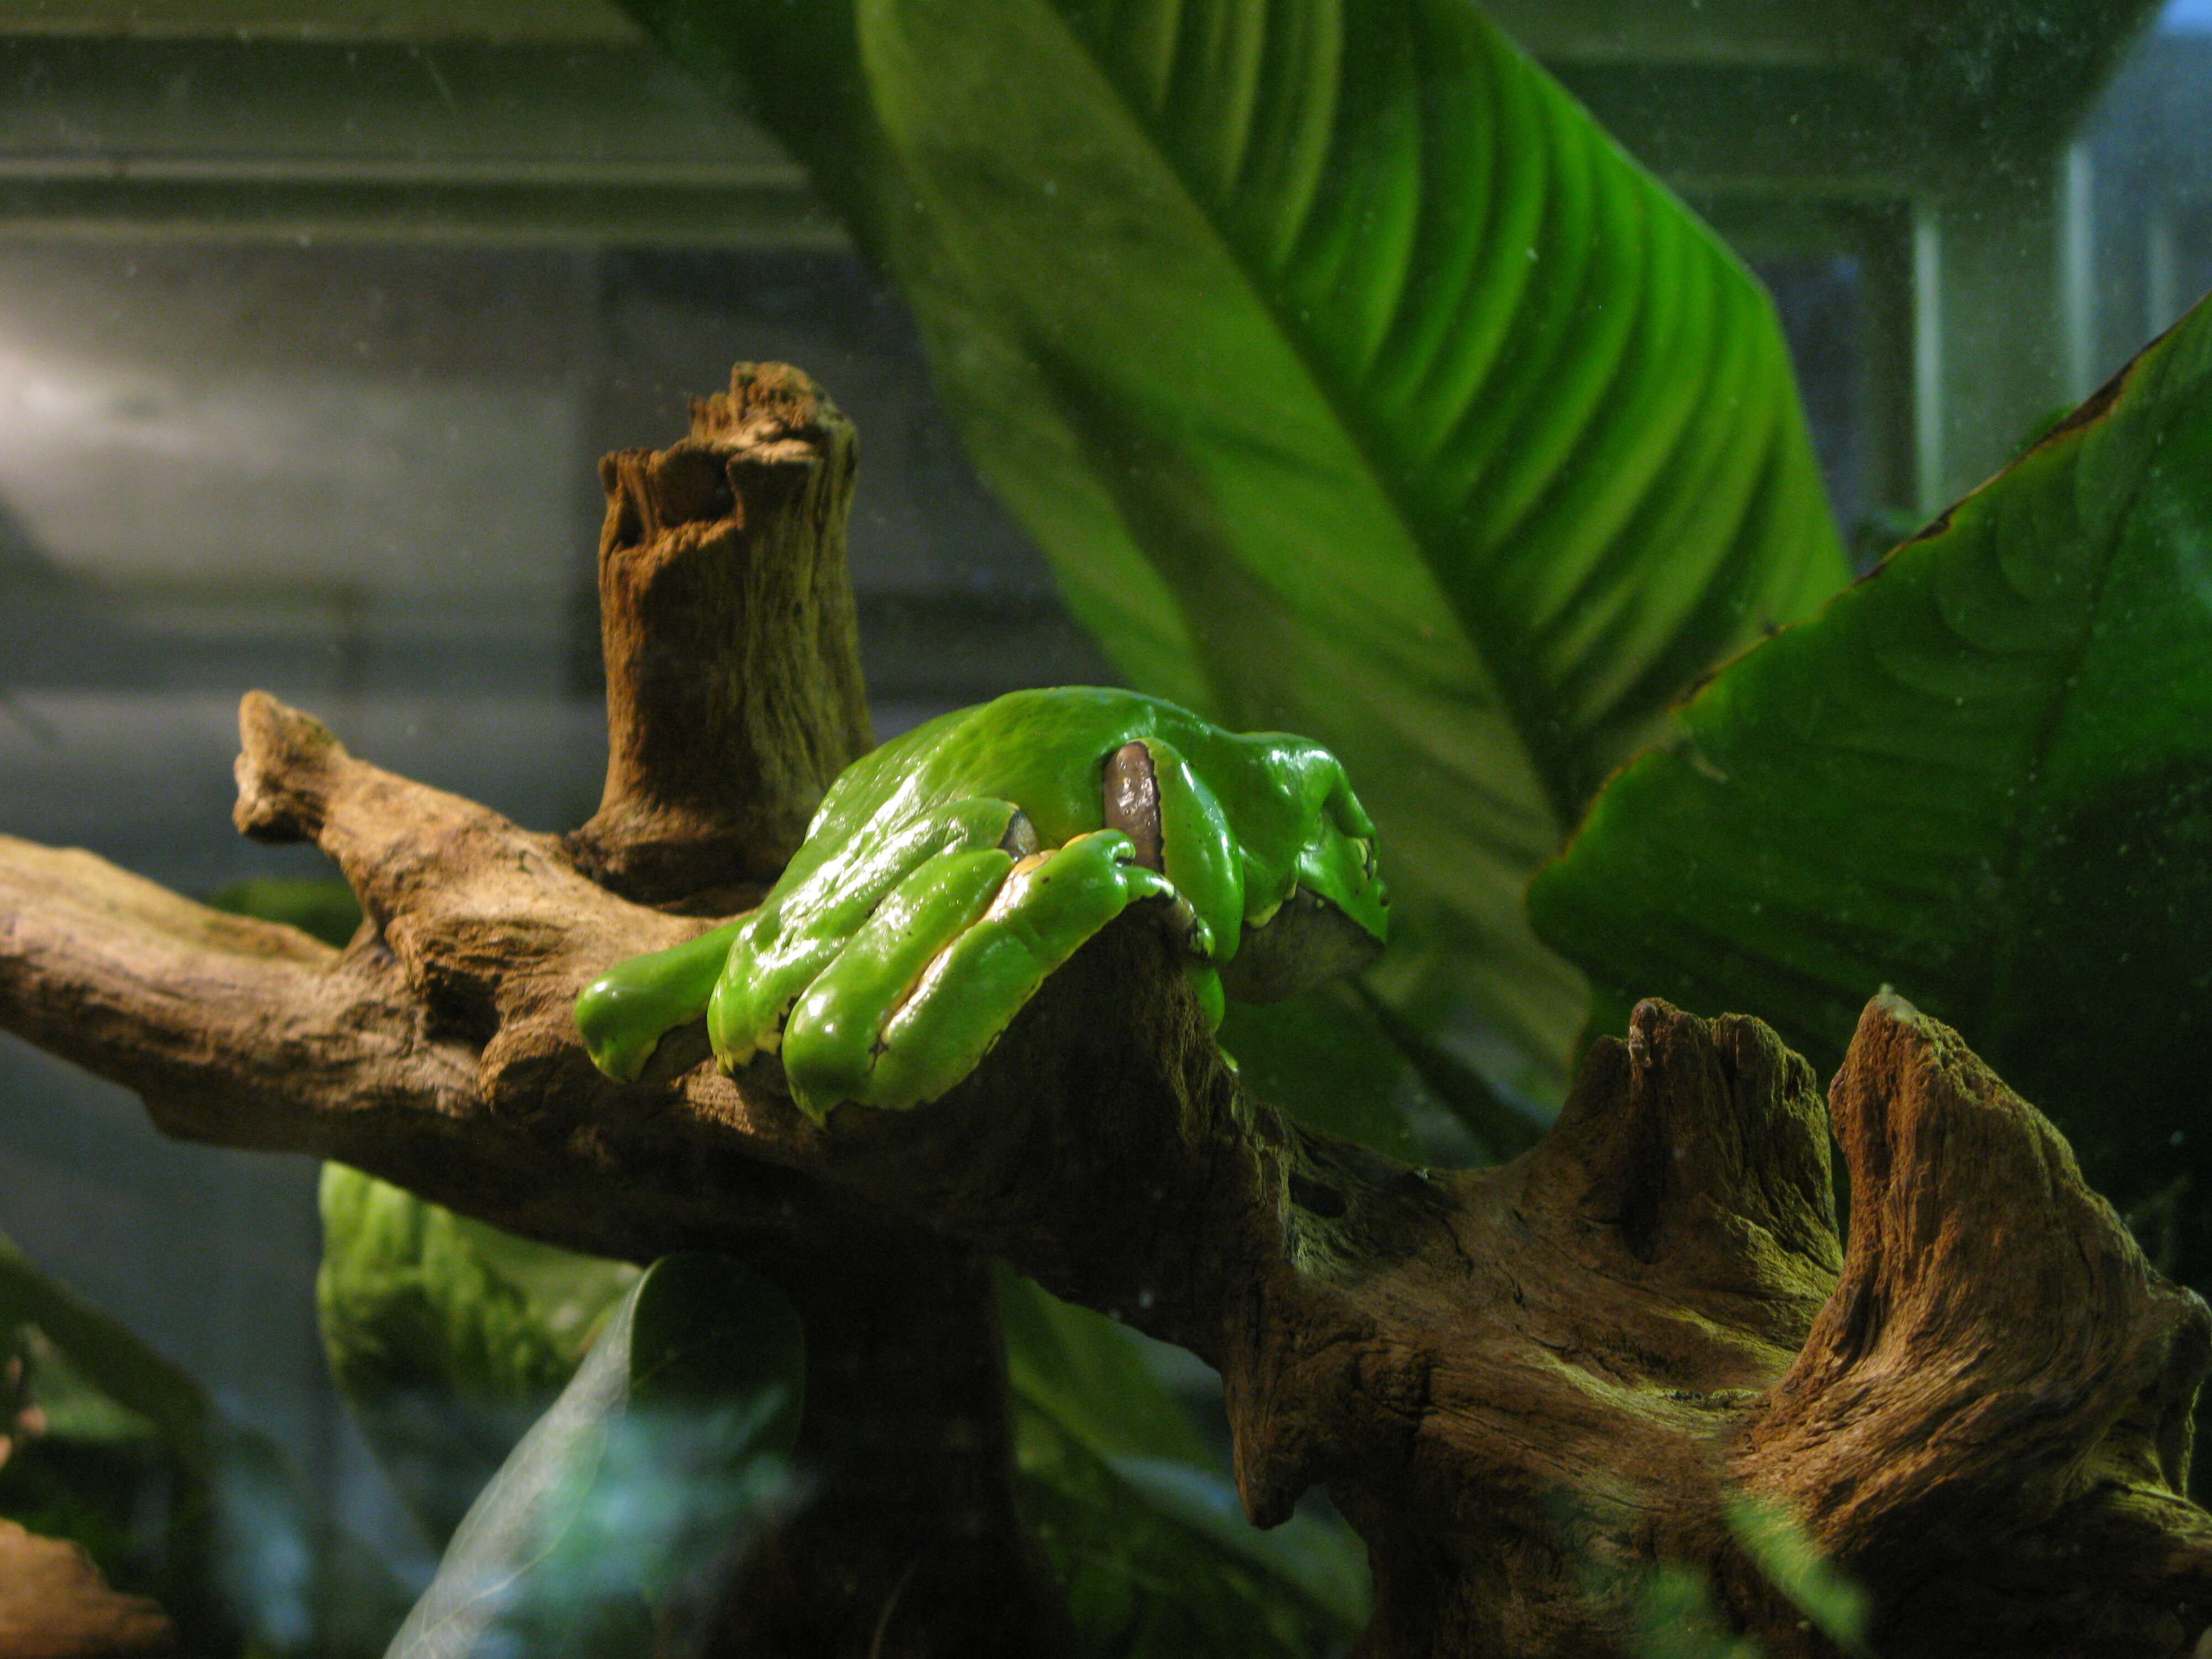 Image of Giant leaf frog